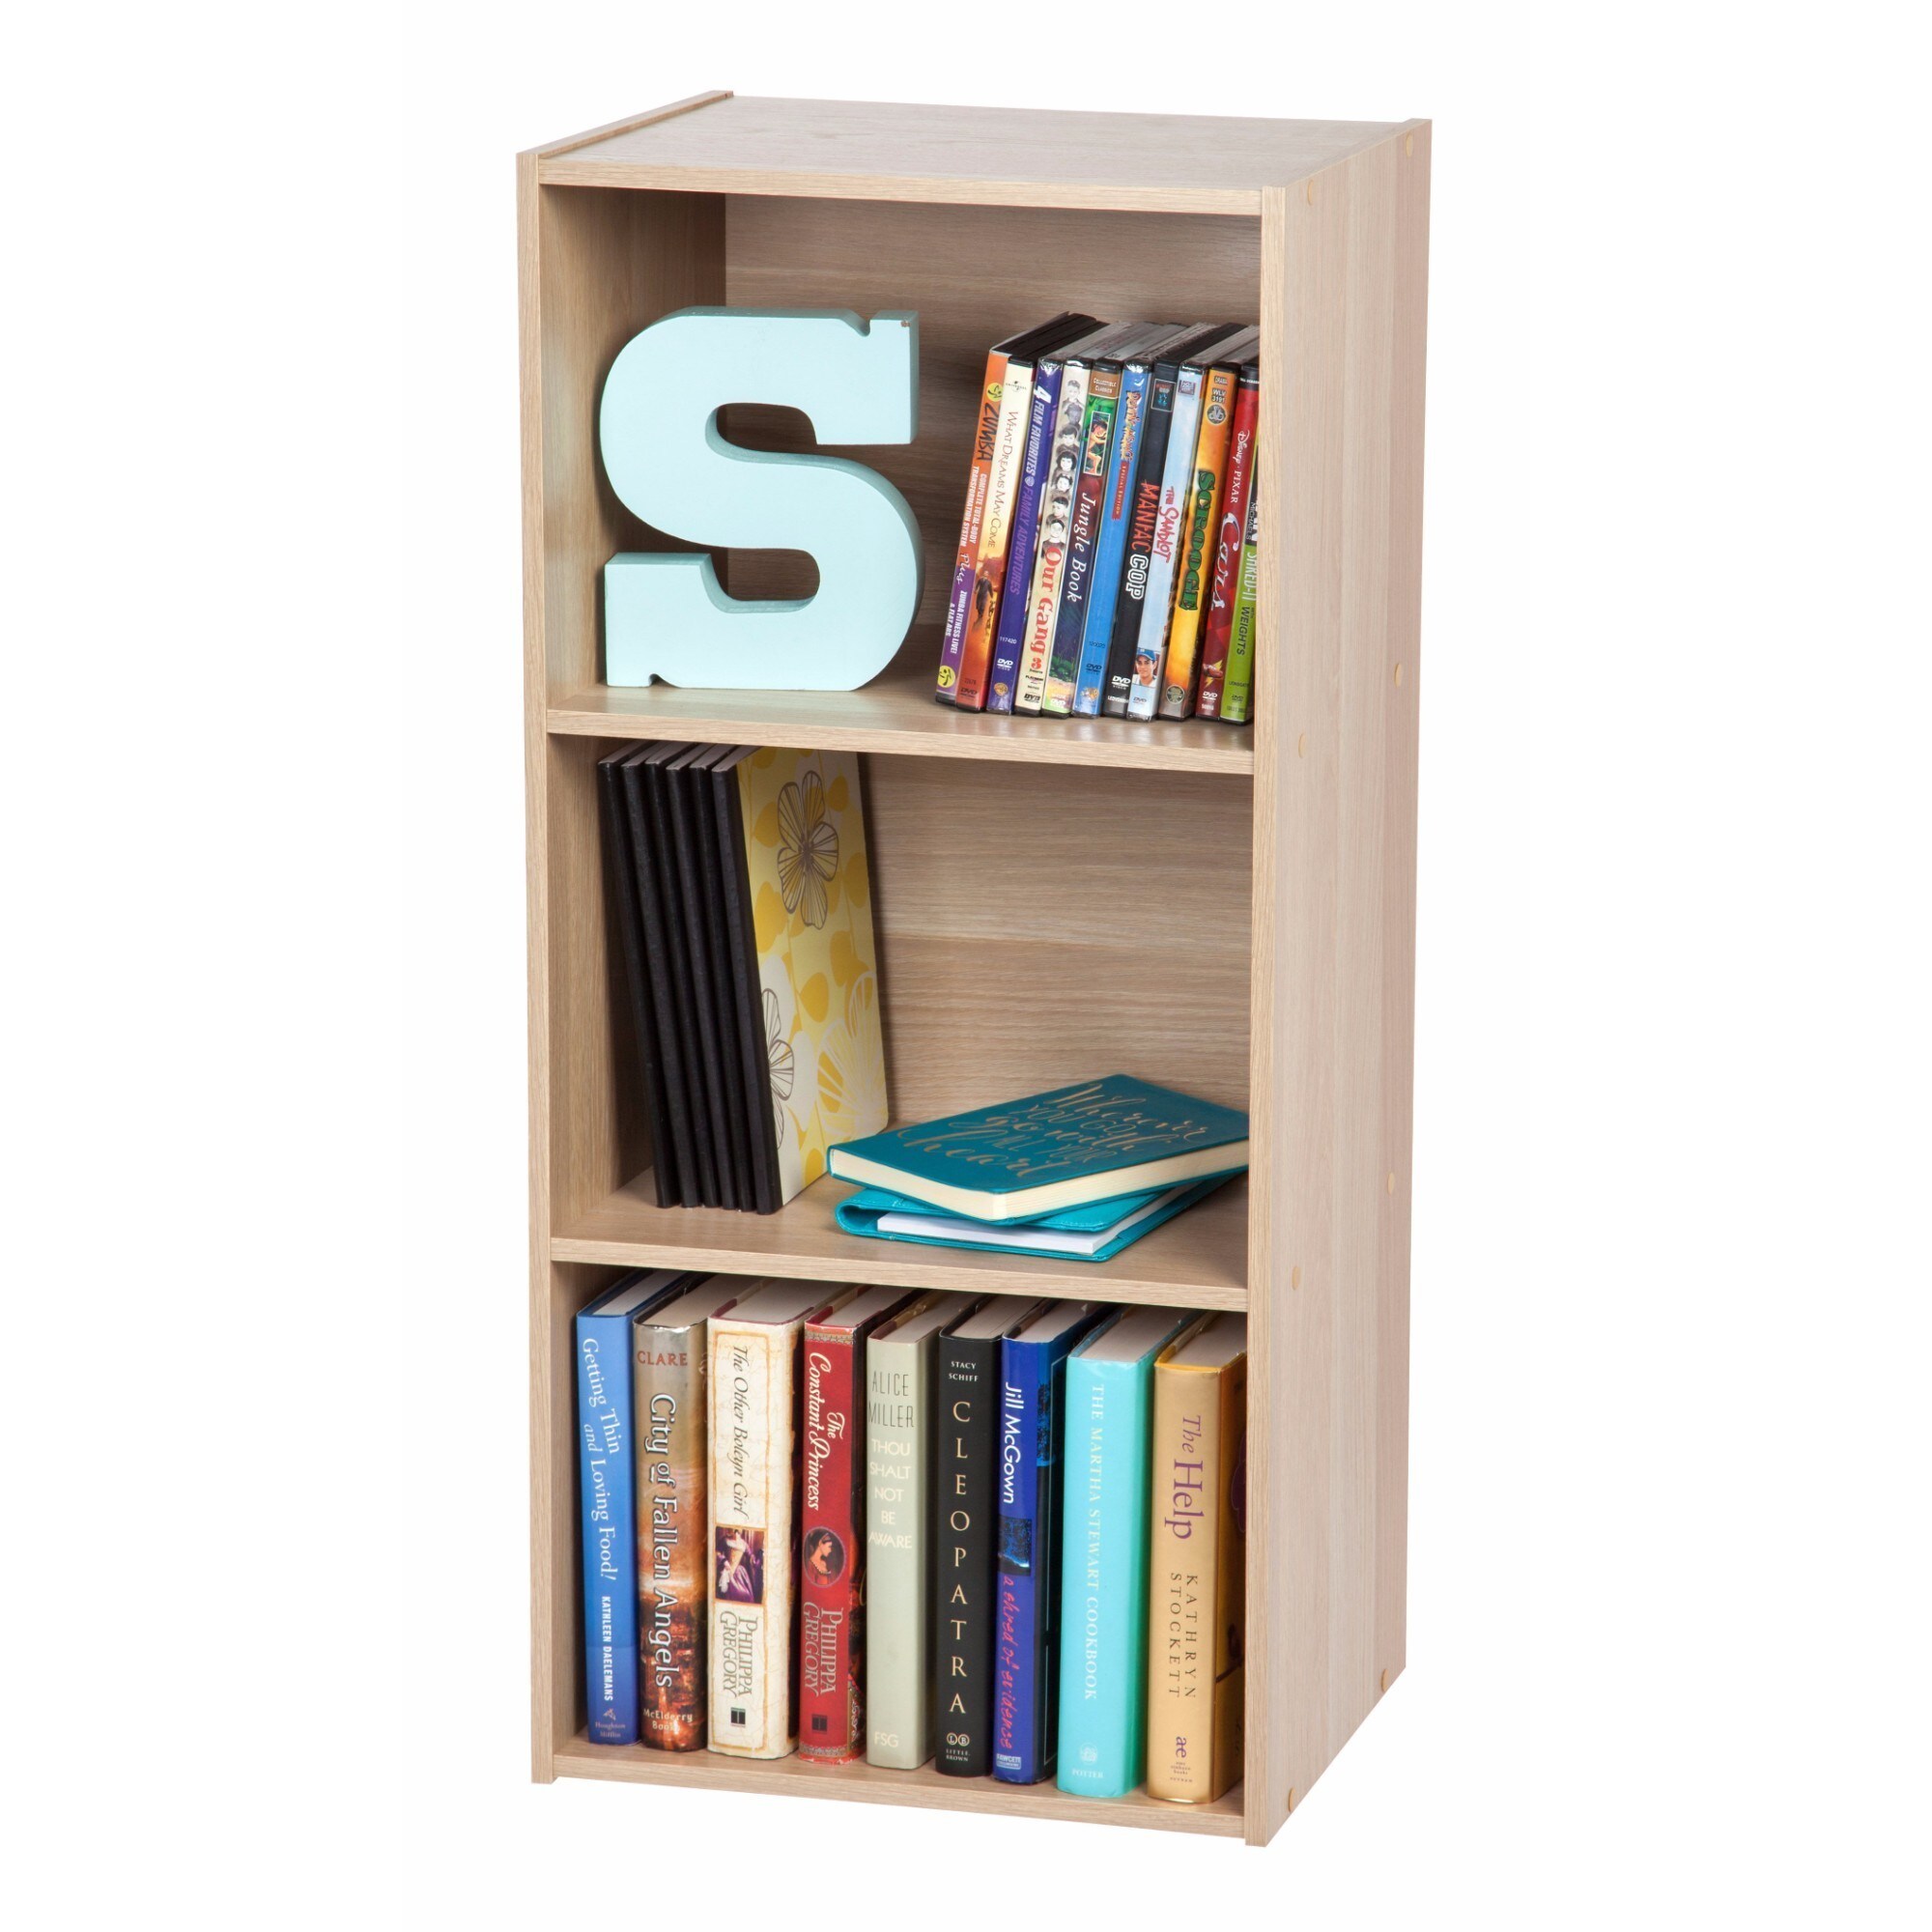 IRIS 3-tier Light Brown Wood Bookcase Storage Shelf - Bed Bath & Beyond -  17158984